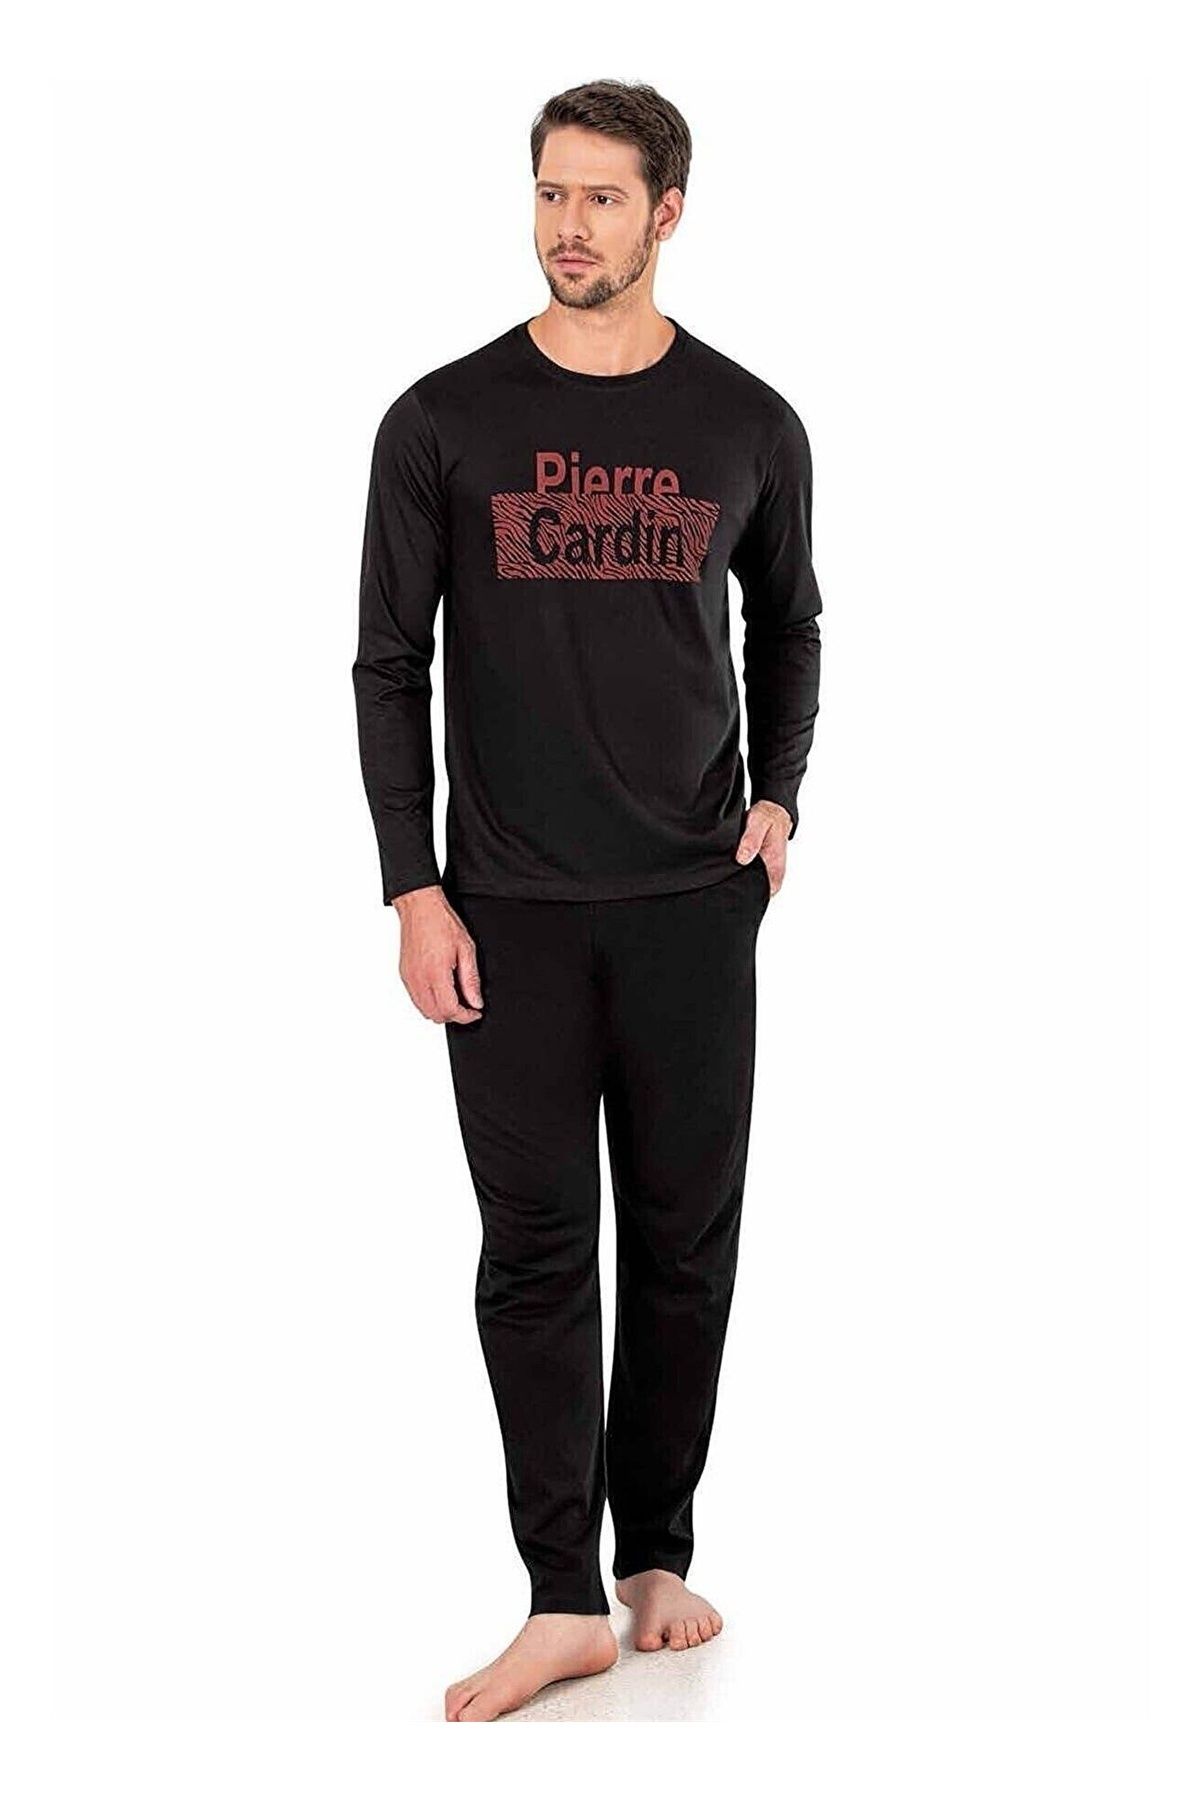 Pierre Cardin 6004 Uzun Kollu Kışlık Erkek Pijama Takımı